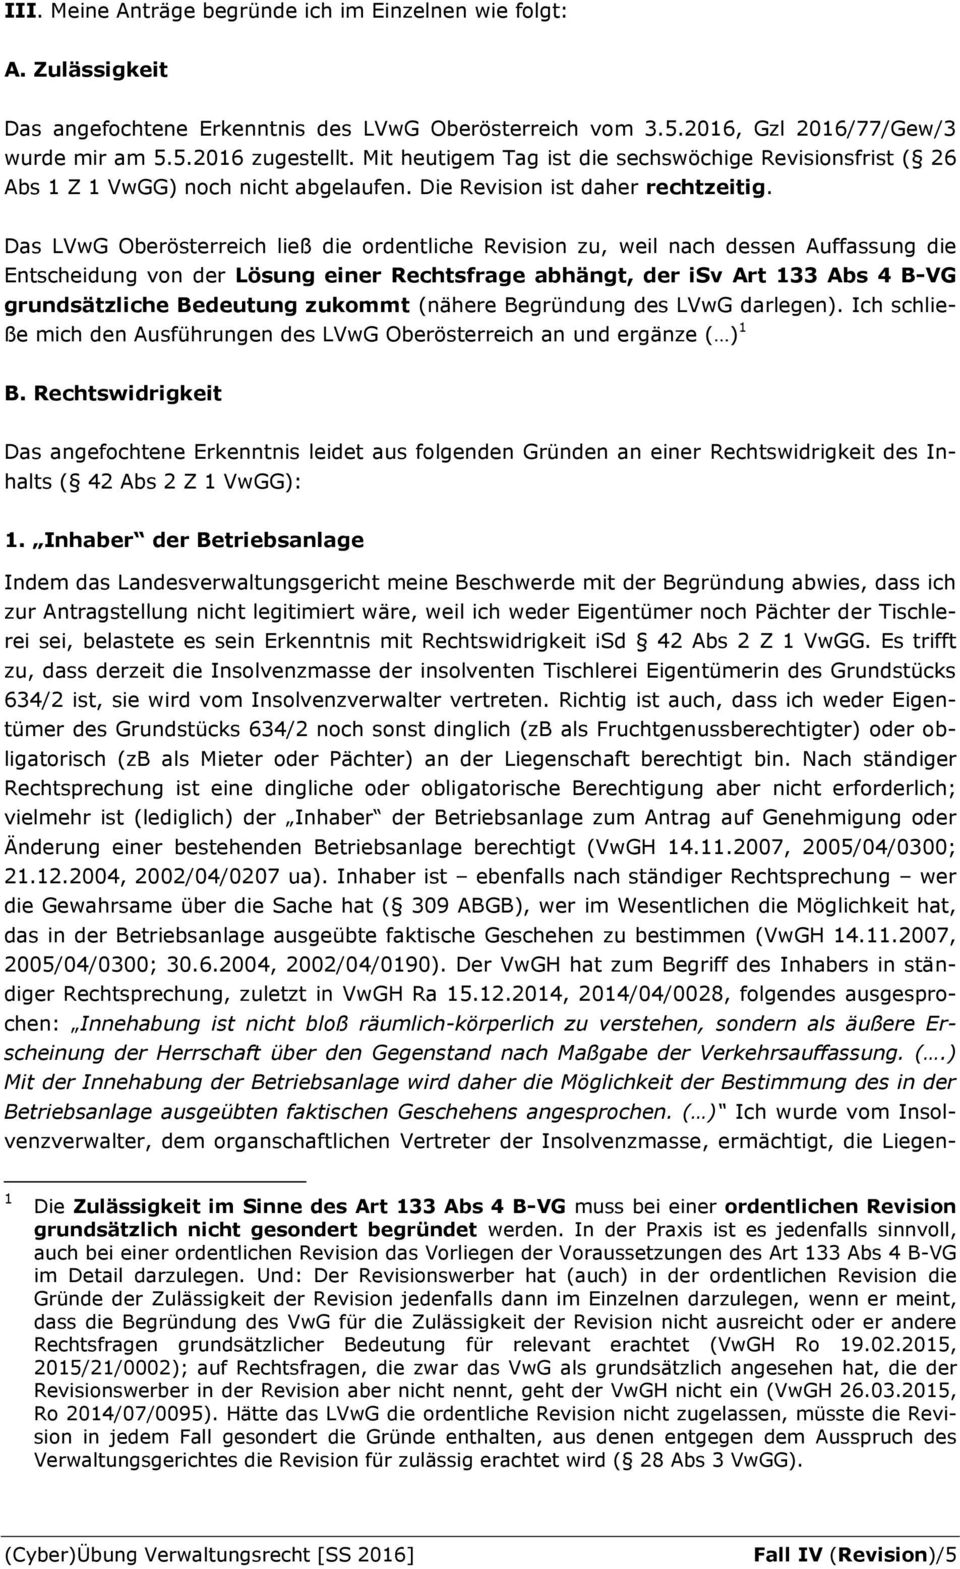 Das LVwG Oberösterreich ließ die ordentliche Revision zu, weil nach dessen Auffassung die Entscheidung von der Lösung einer Rechtsfrage abhängt, der isv Art 133 Abs 4 B-VG grundsätzliche Bedeutung